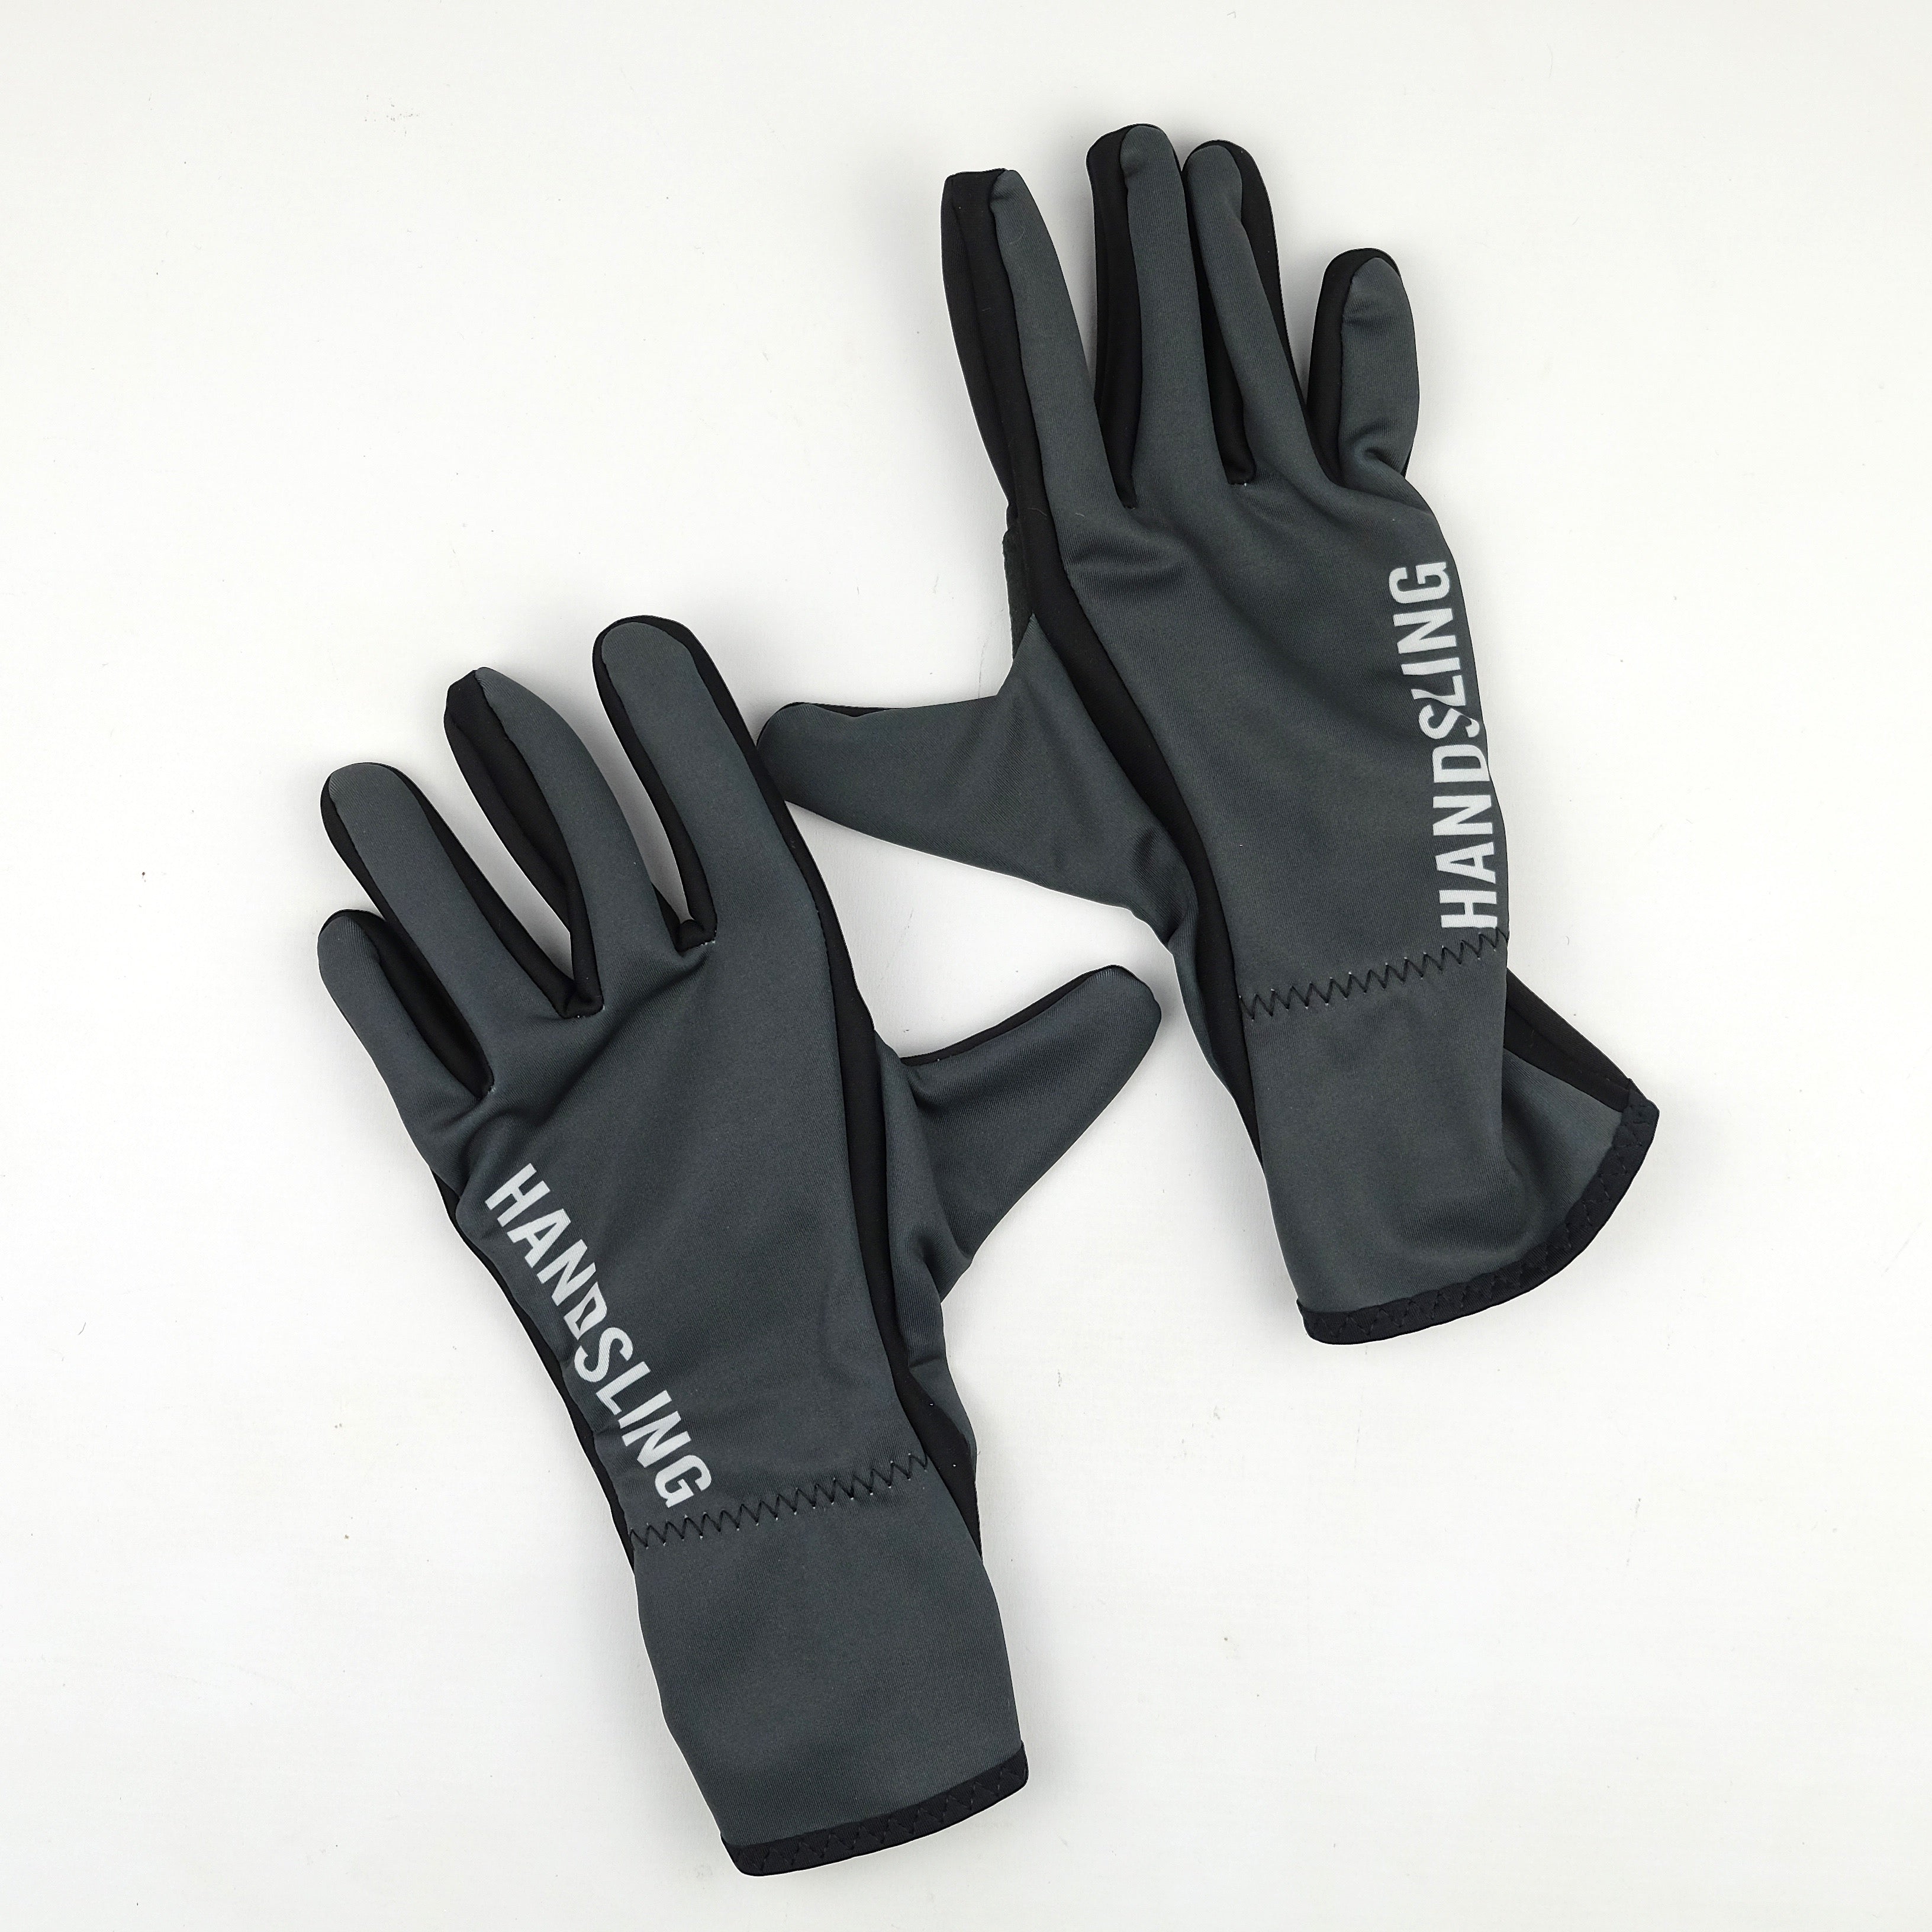 Handsling Winter Gloves